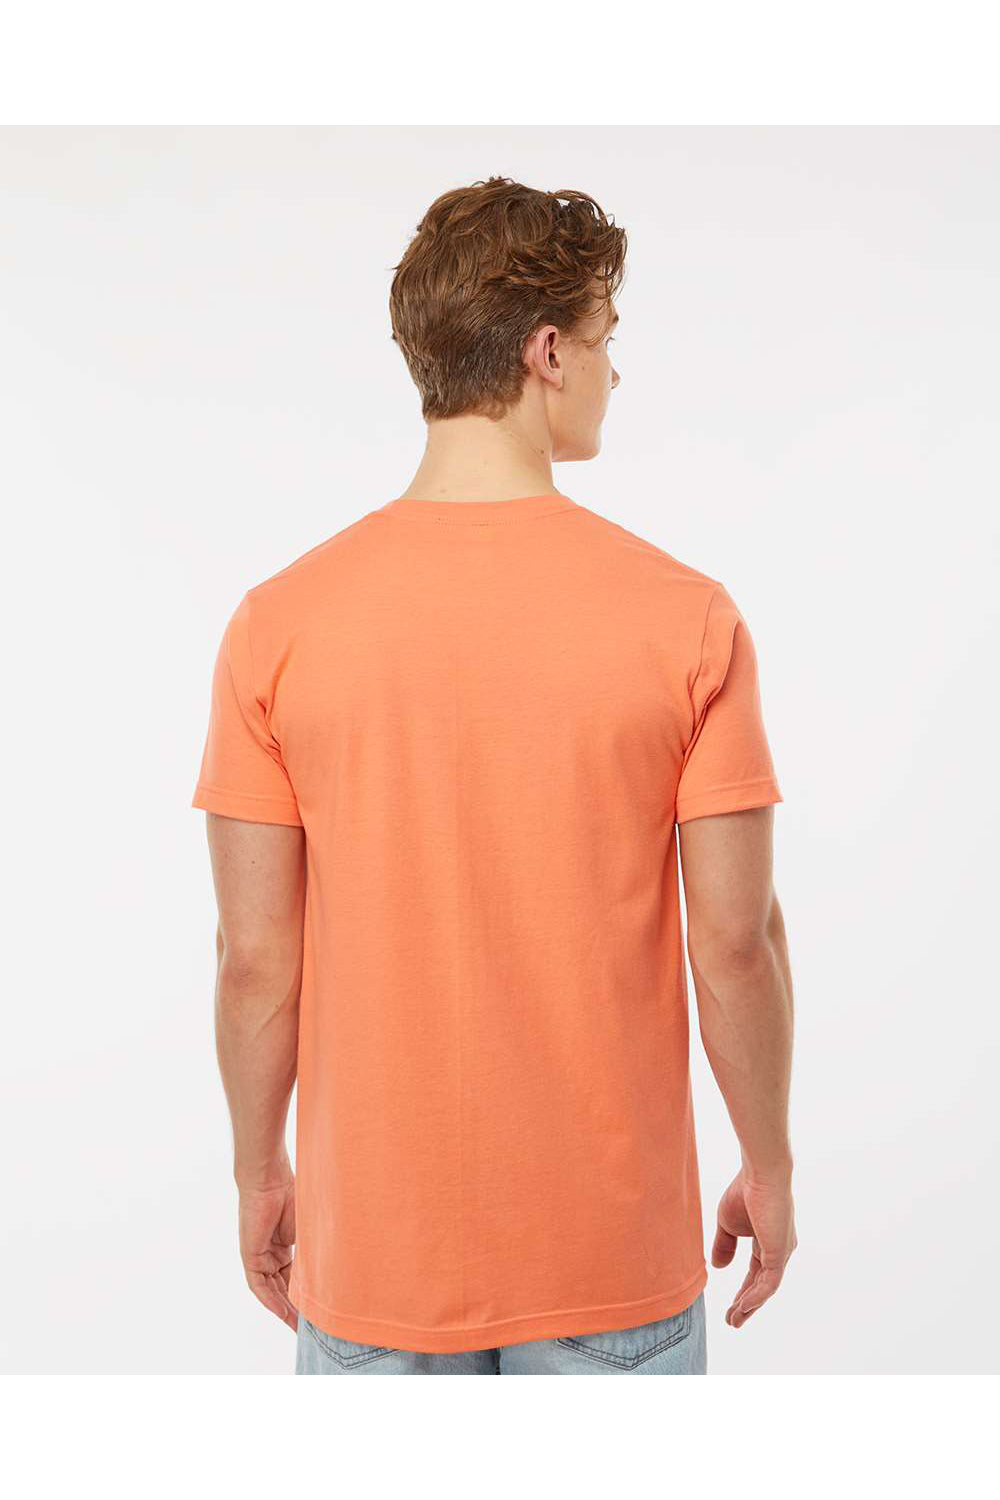 Tultex 202 Mens Fine Jersey Short Sleeve Crewneck T-Shirt Coral Orange Model Back